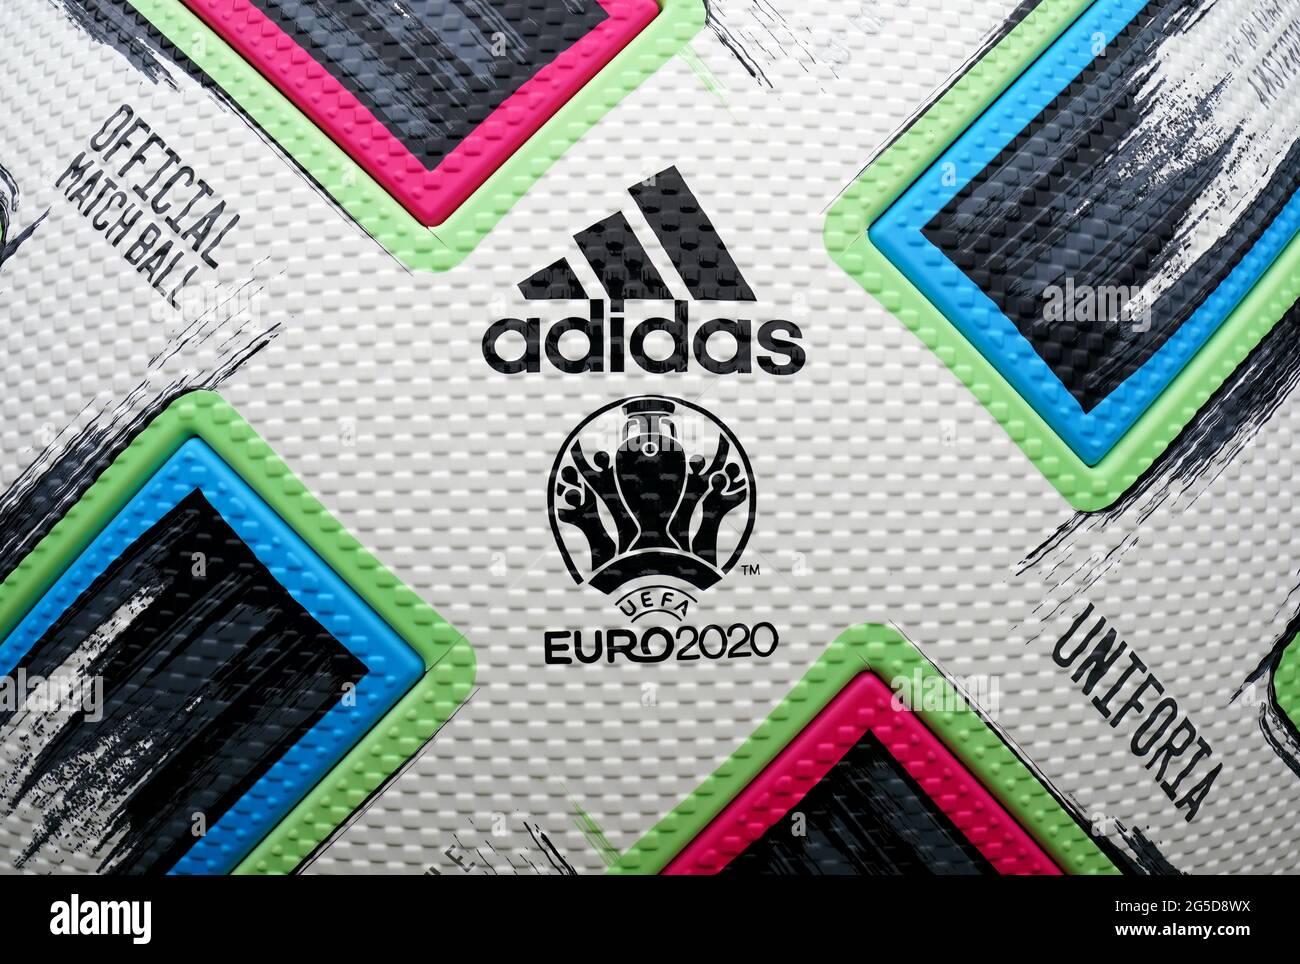 Nahaufnahme eines riesigen Adidas-Spielballs am Trafalgar Square in London, der die UEFA Euro 2020-Runde des Spiels von 16 zwischen Italien und Österreich beobachtet. Bilddatum: Samstag, 26. Juni 2021. Stockfoto